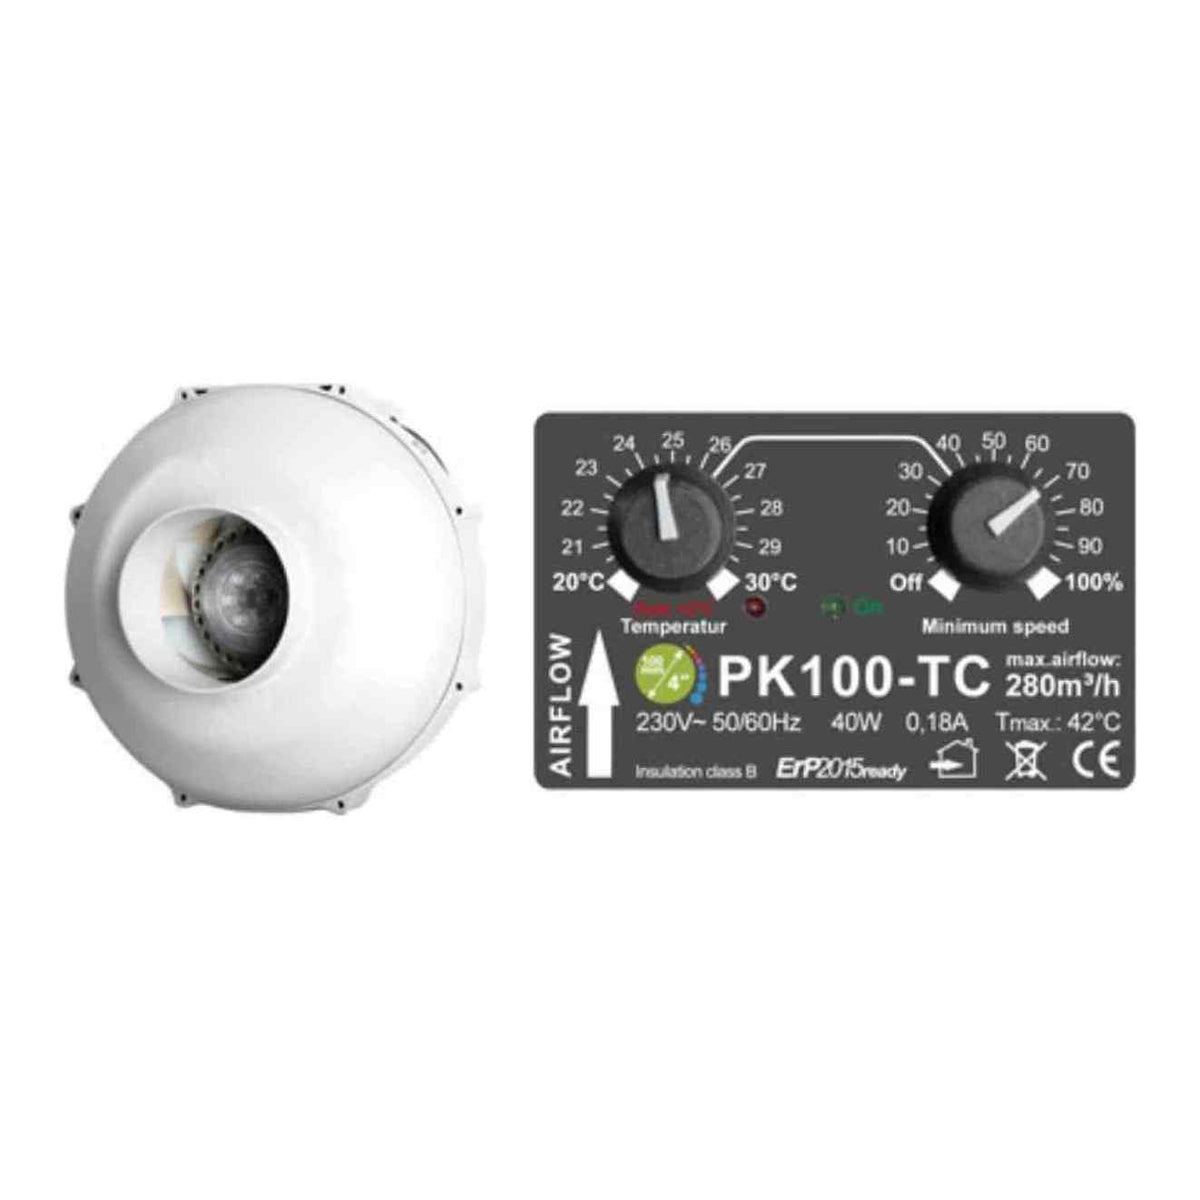 PK100-TC Temperature Controlled